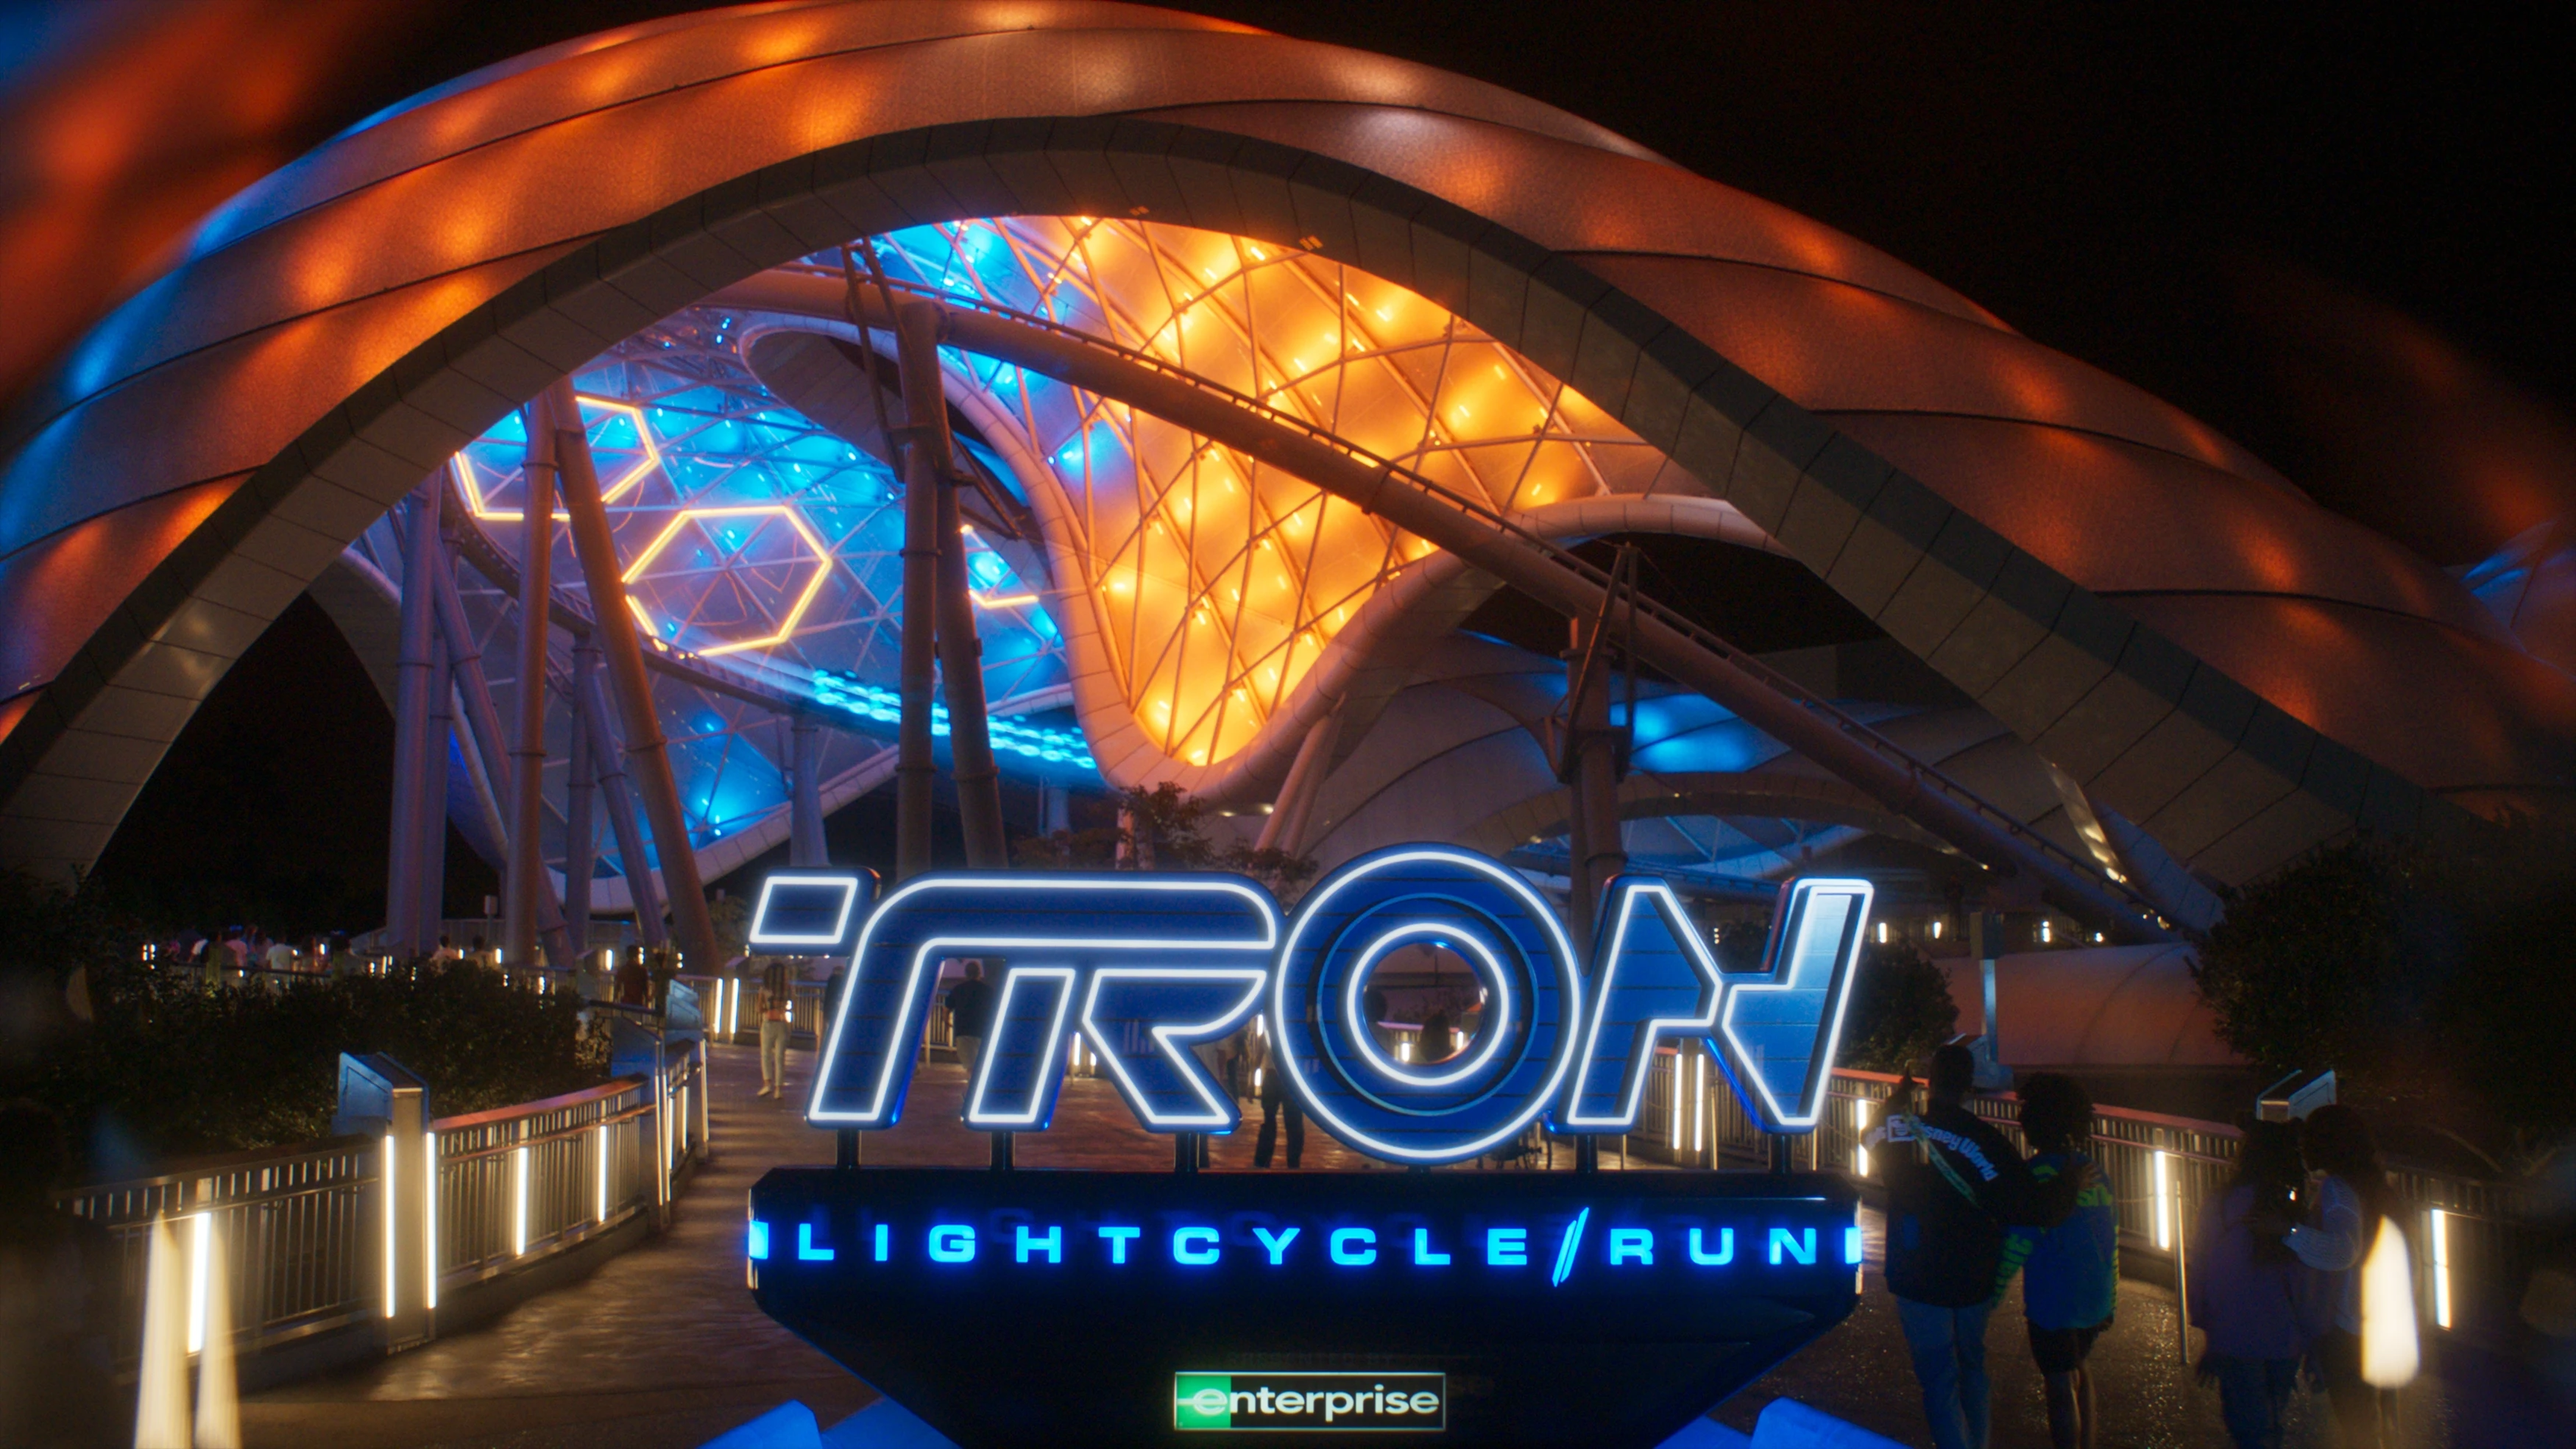 TRON_Lightcycle-Run_stillion-02124.webp